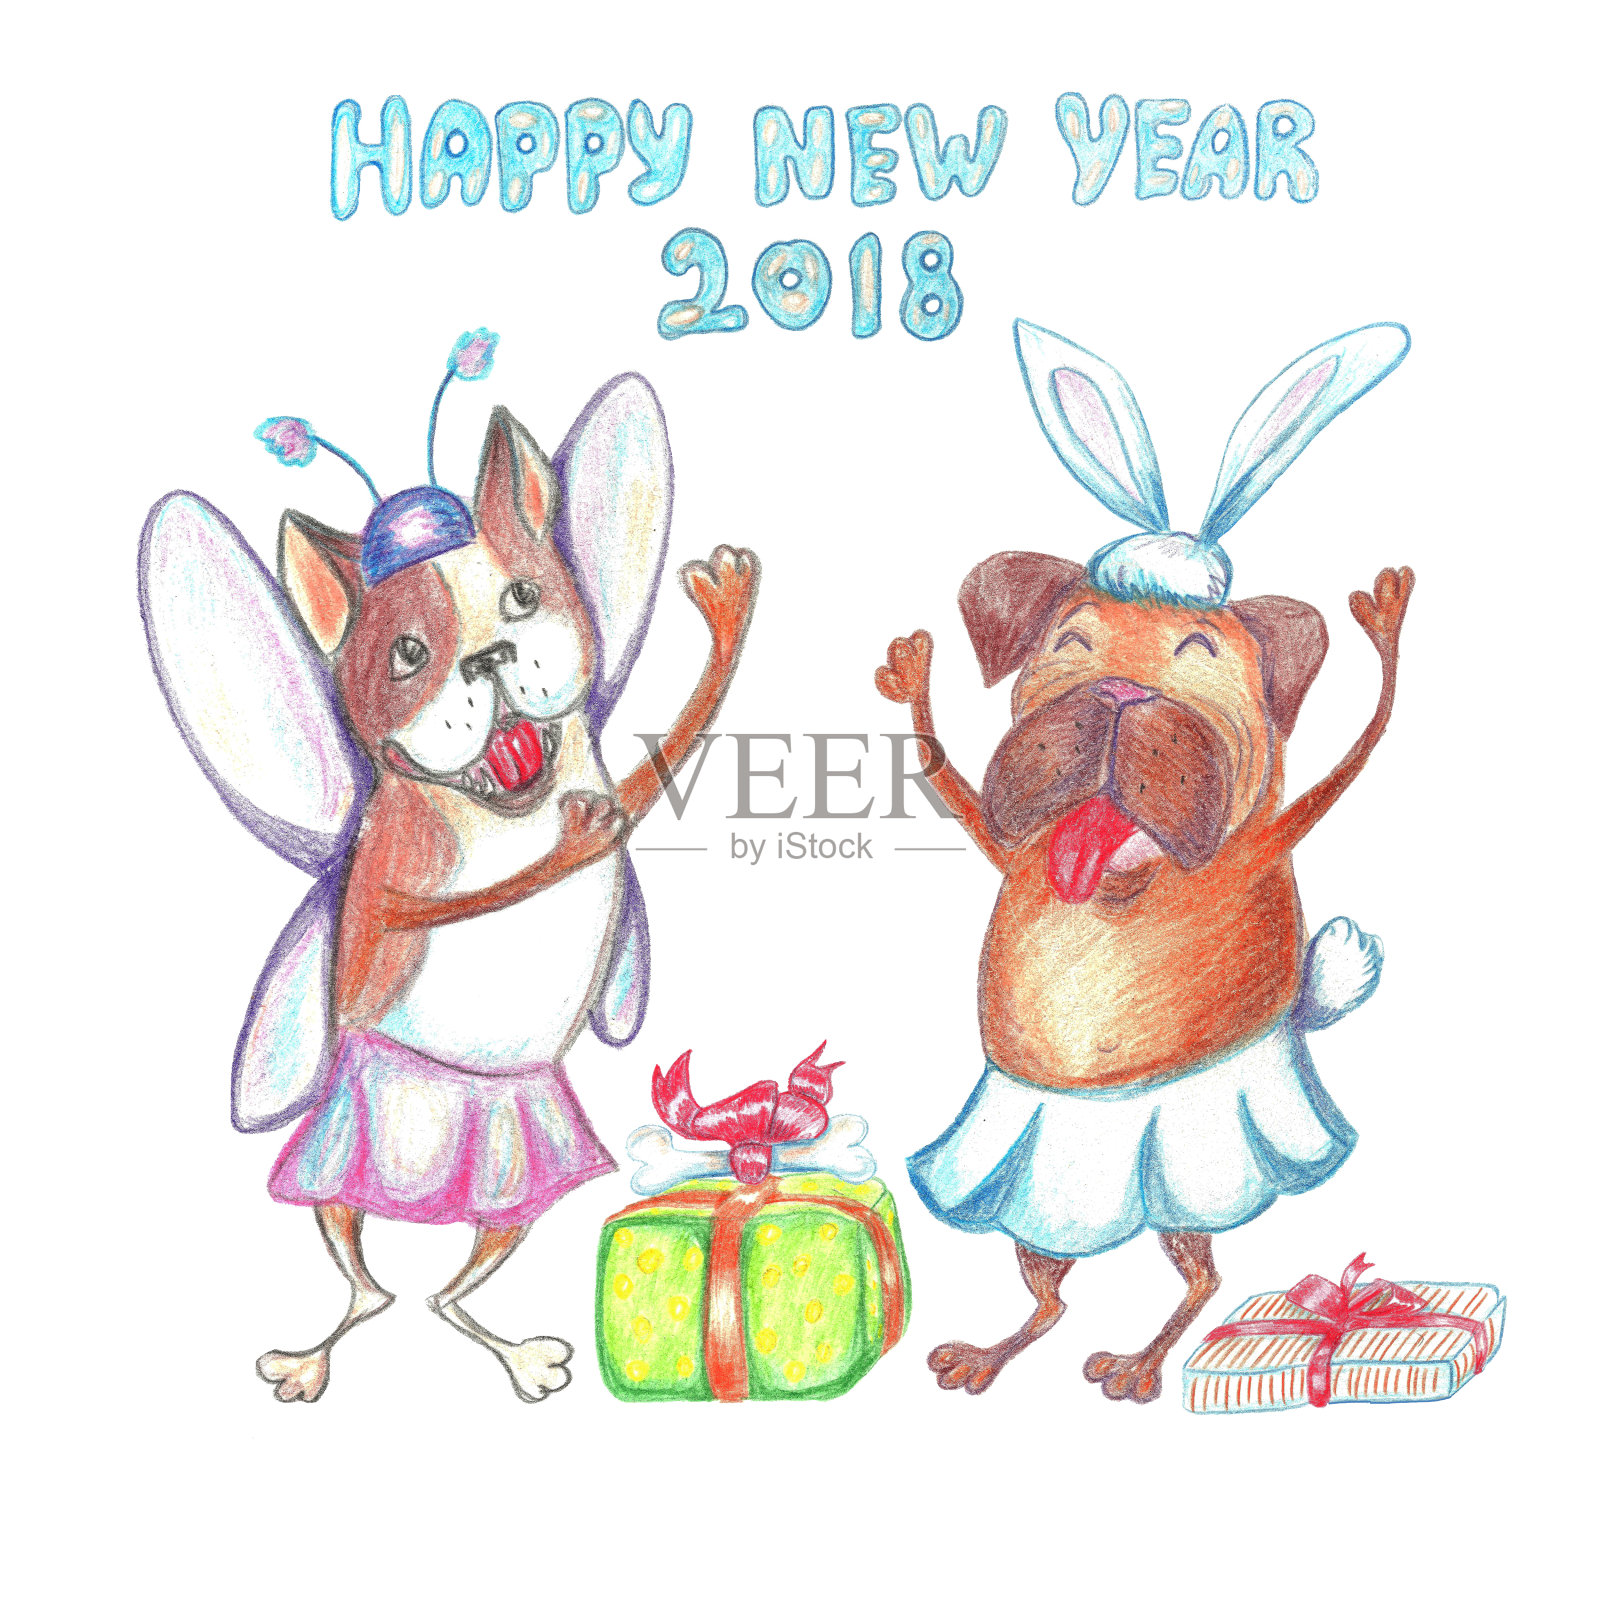 水彩画滑稽跳舞的哈巴狗和法国斗牛犬在狂欢节的服装。祝你新年快乐。2018狗的象征。插画图片素材